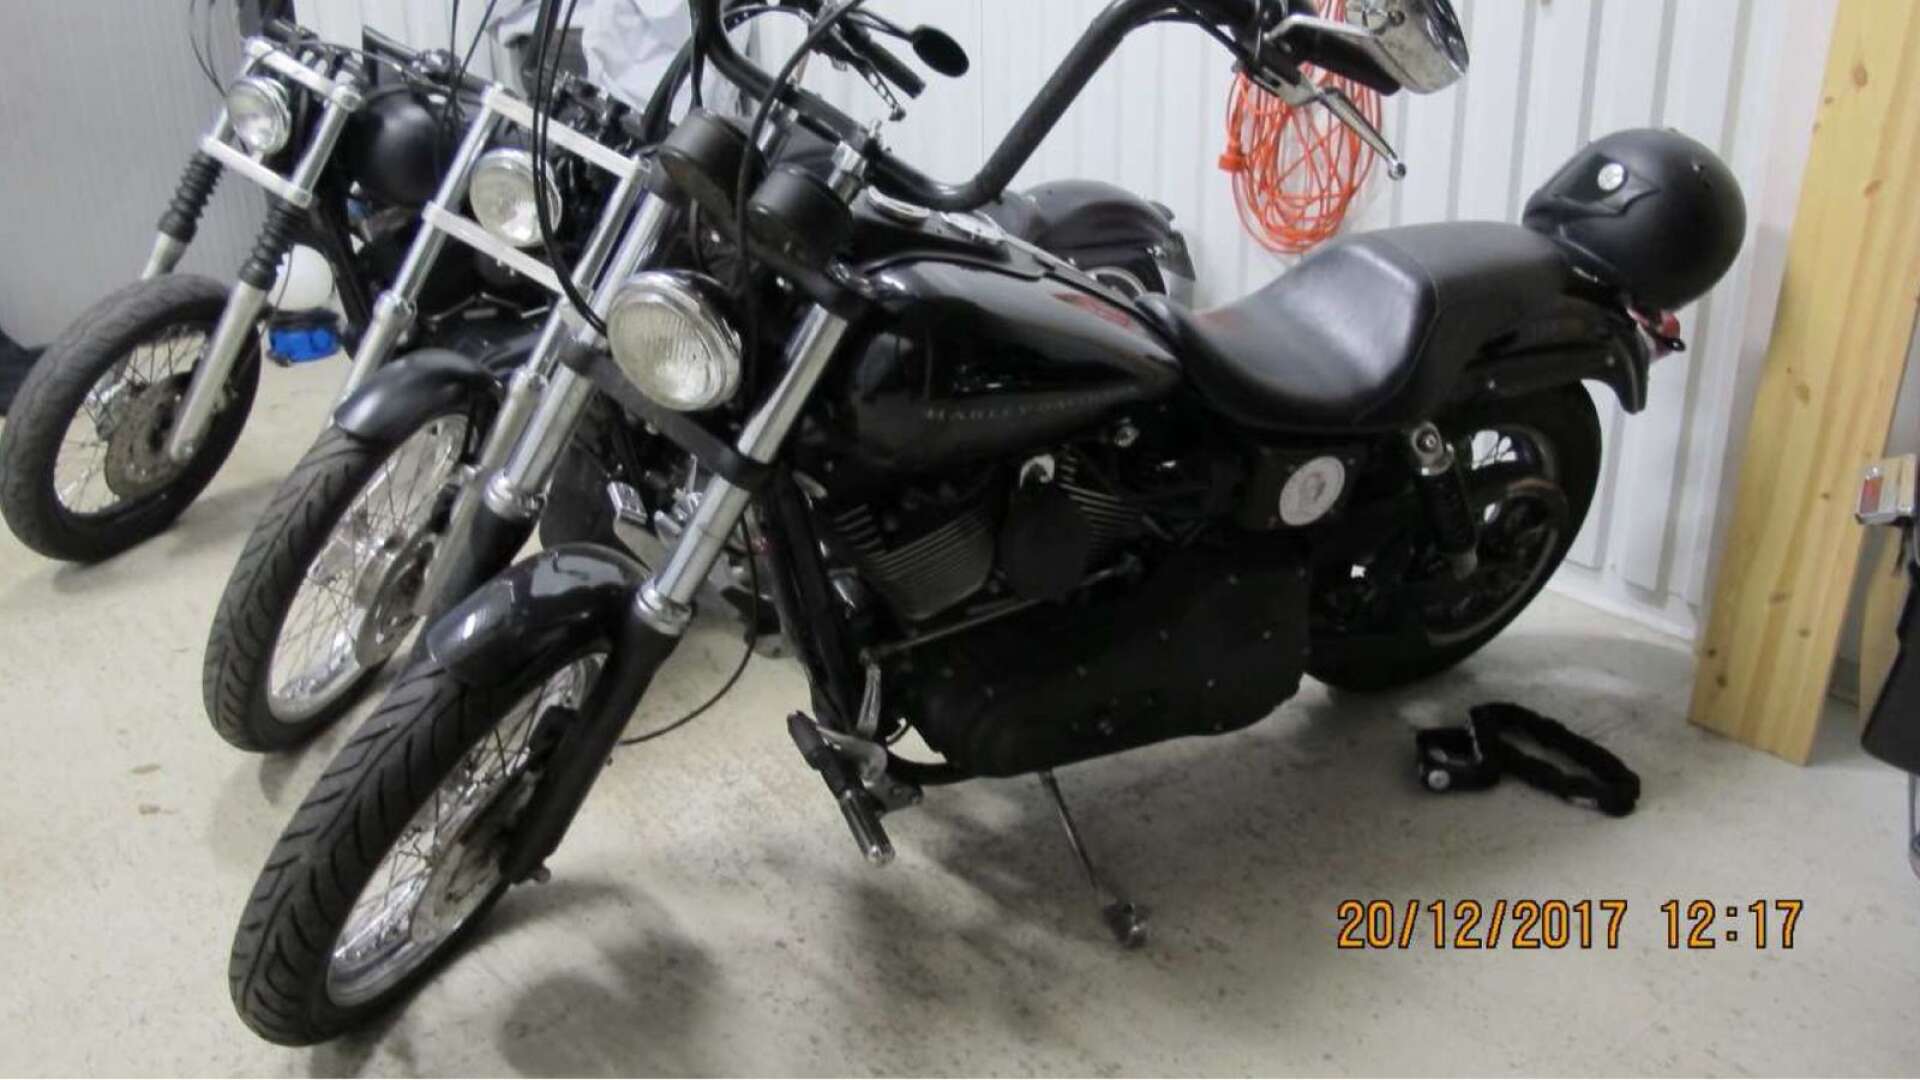 Den här motorcykeln – en Harley-Davidson FXDX – vill kronofogden mäta ut för att kunna kräva in en skuld från den nyss livstidsdömde HA-mannen. Mc:n stod i ett garage på Örsholmen.